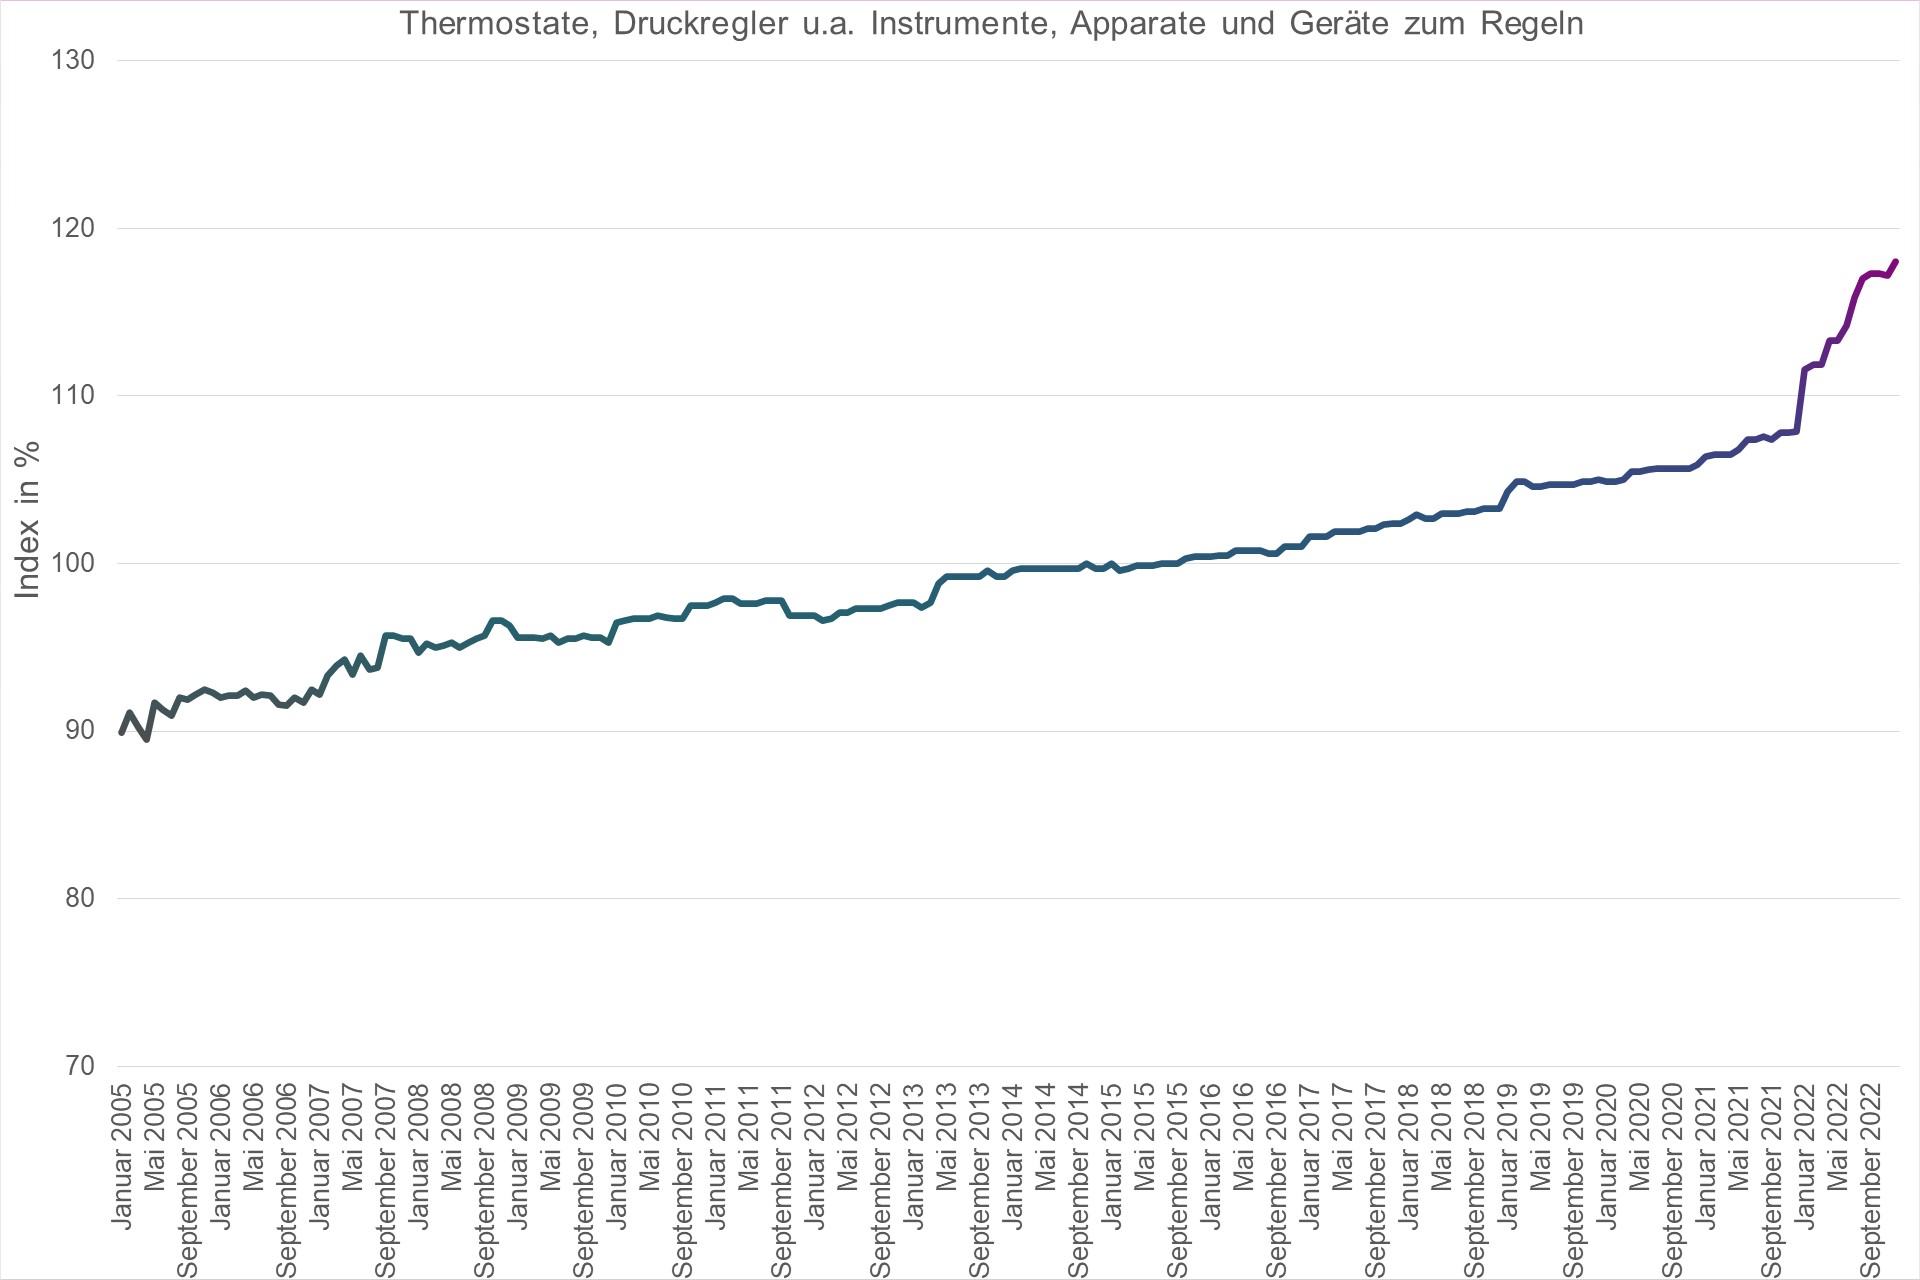 Grafik Preisindex Thermostate, Druckregler u.a. Instrumente, Apparate und Geräte zum Regeln